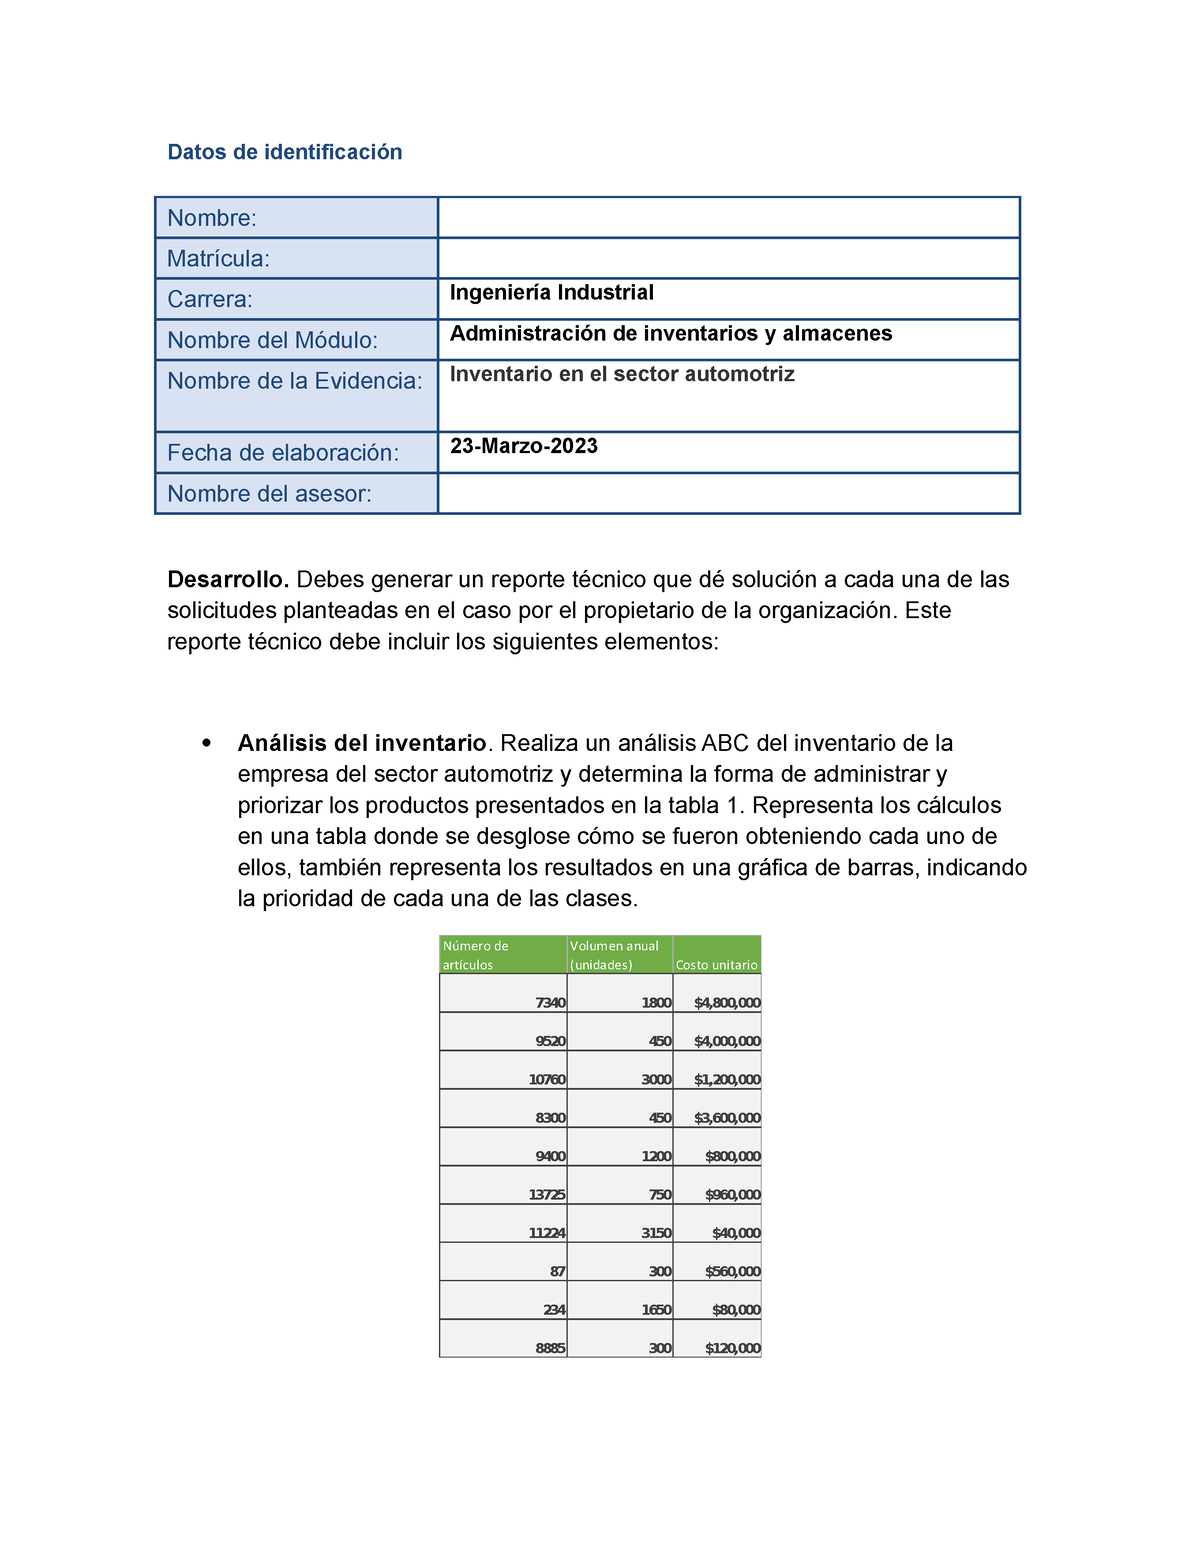 Garcia Alan Ea2 Inventario En El Sector Automotriz Datos De Identificación Nombre Matrícula 4180